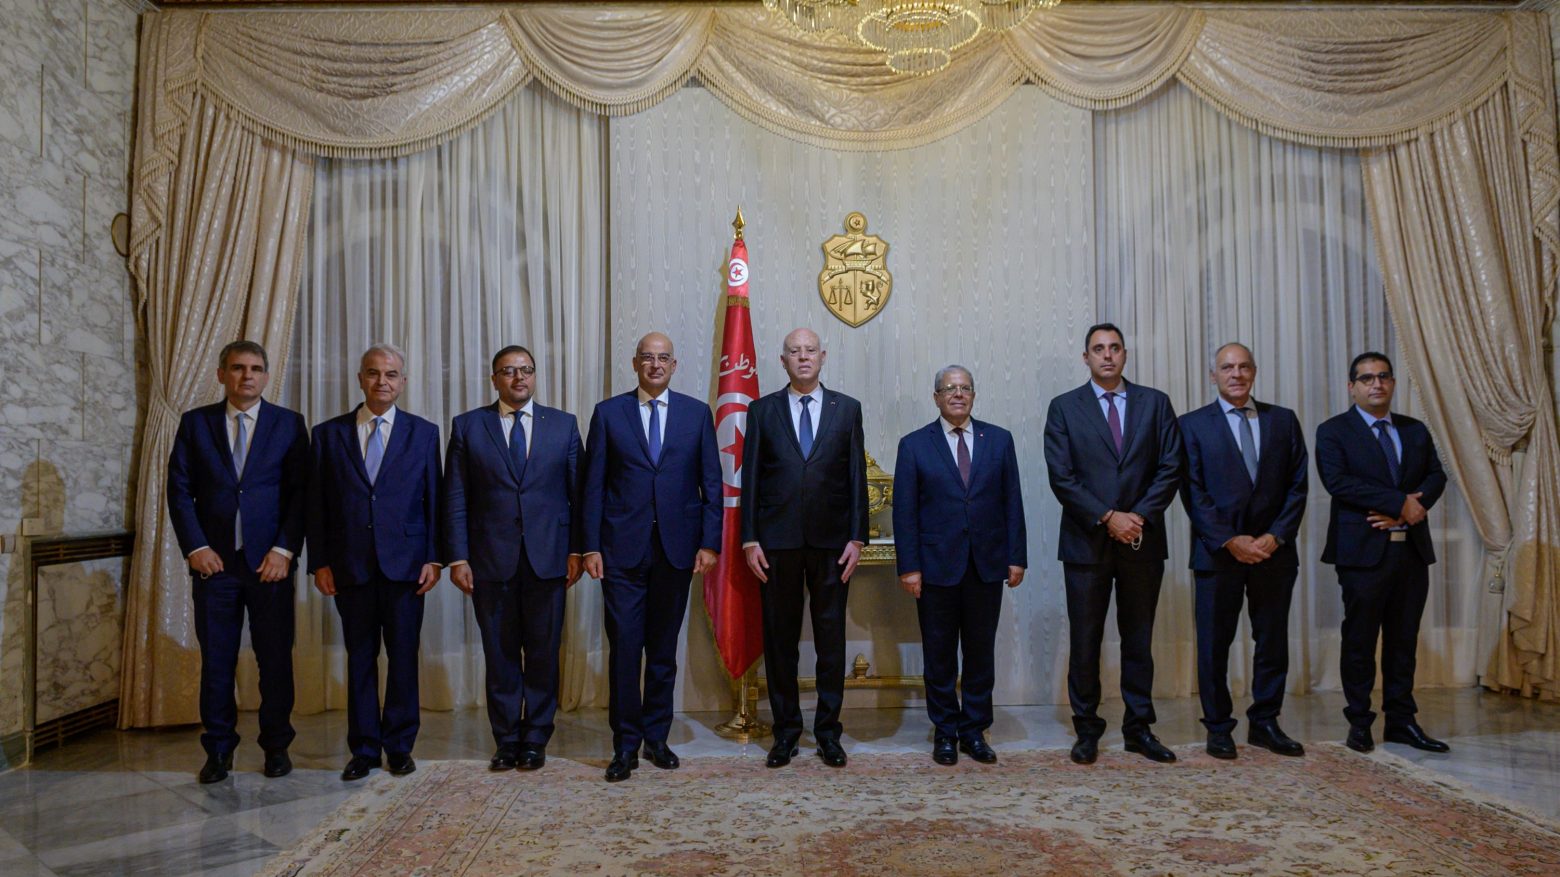 Δένδιας – Σε αντίθεση με άλλες χώρες δεν έχουμε κρυφή ατζέντα στις σχέσεις μας με την Τυνησία